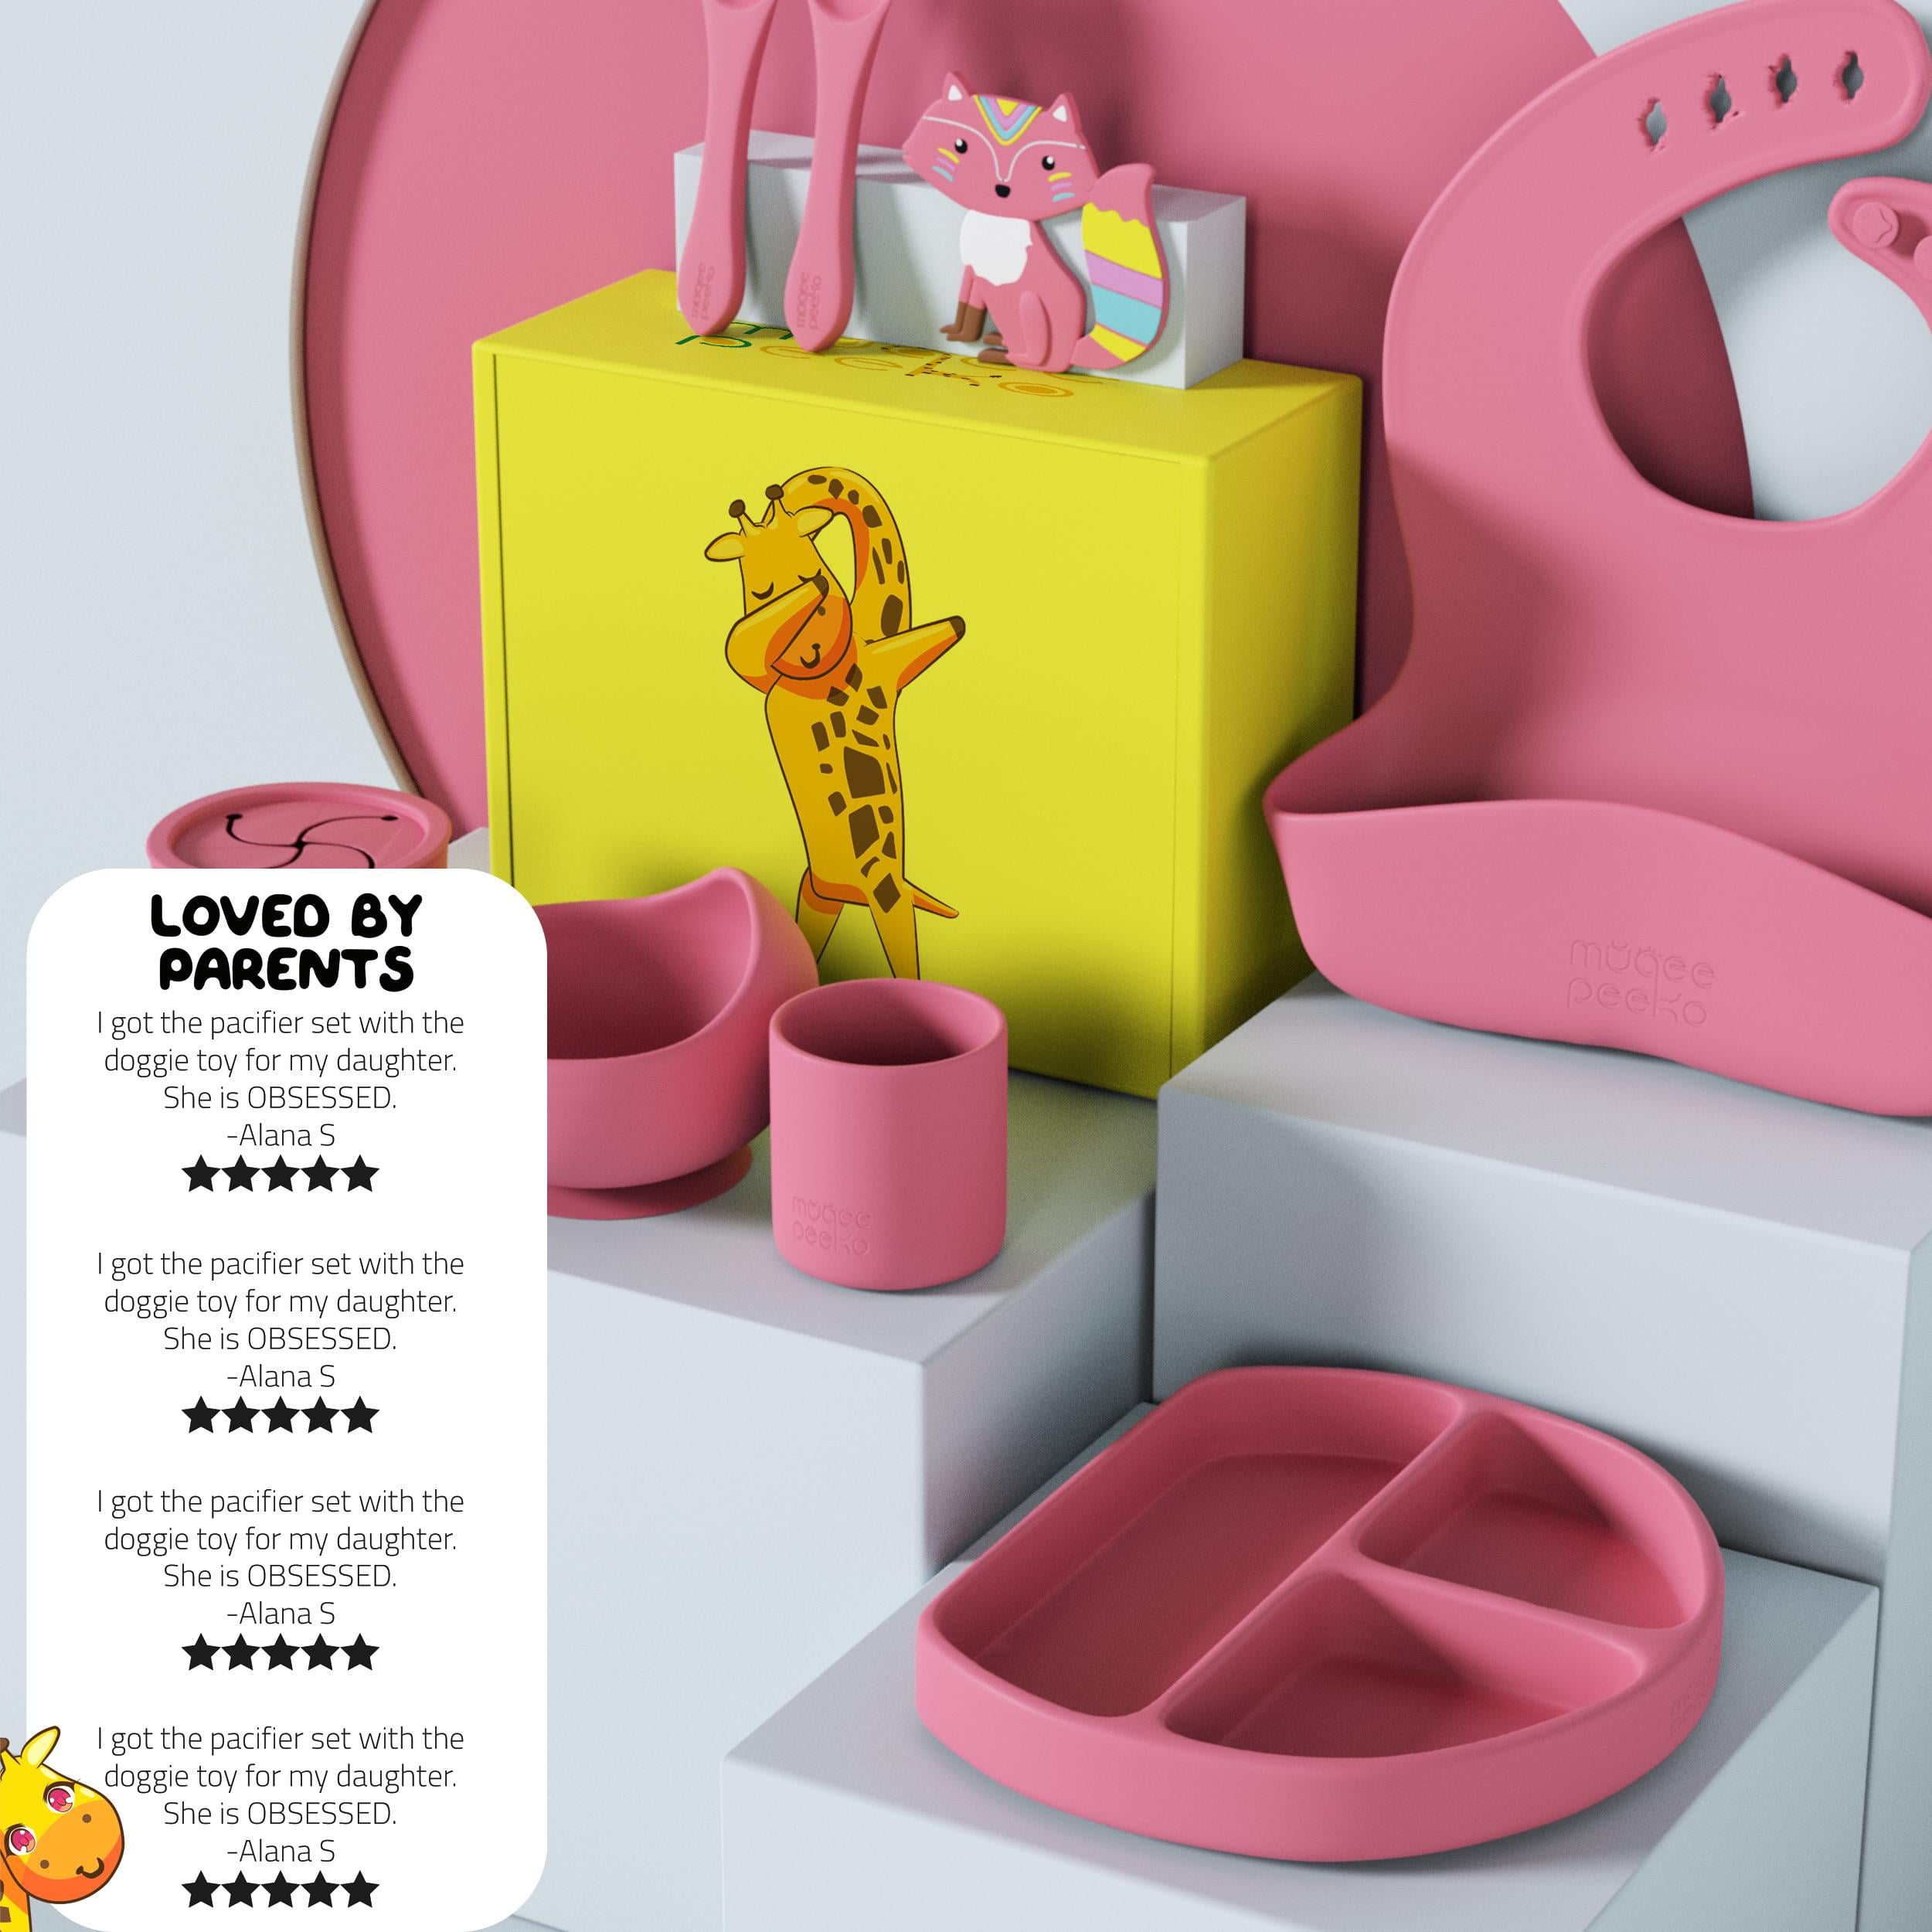 Trixie PLA 2-PACK - Assiette pour enfants - pink/argenté 